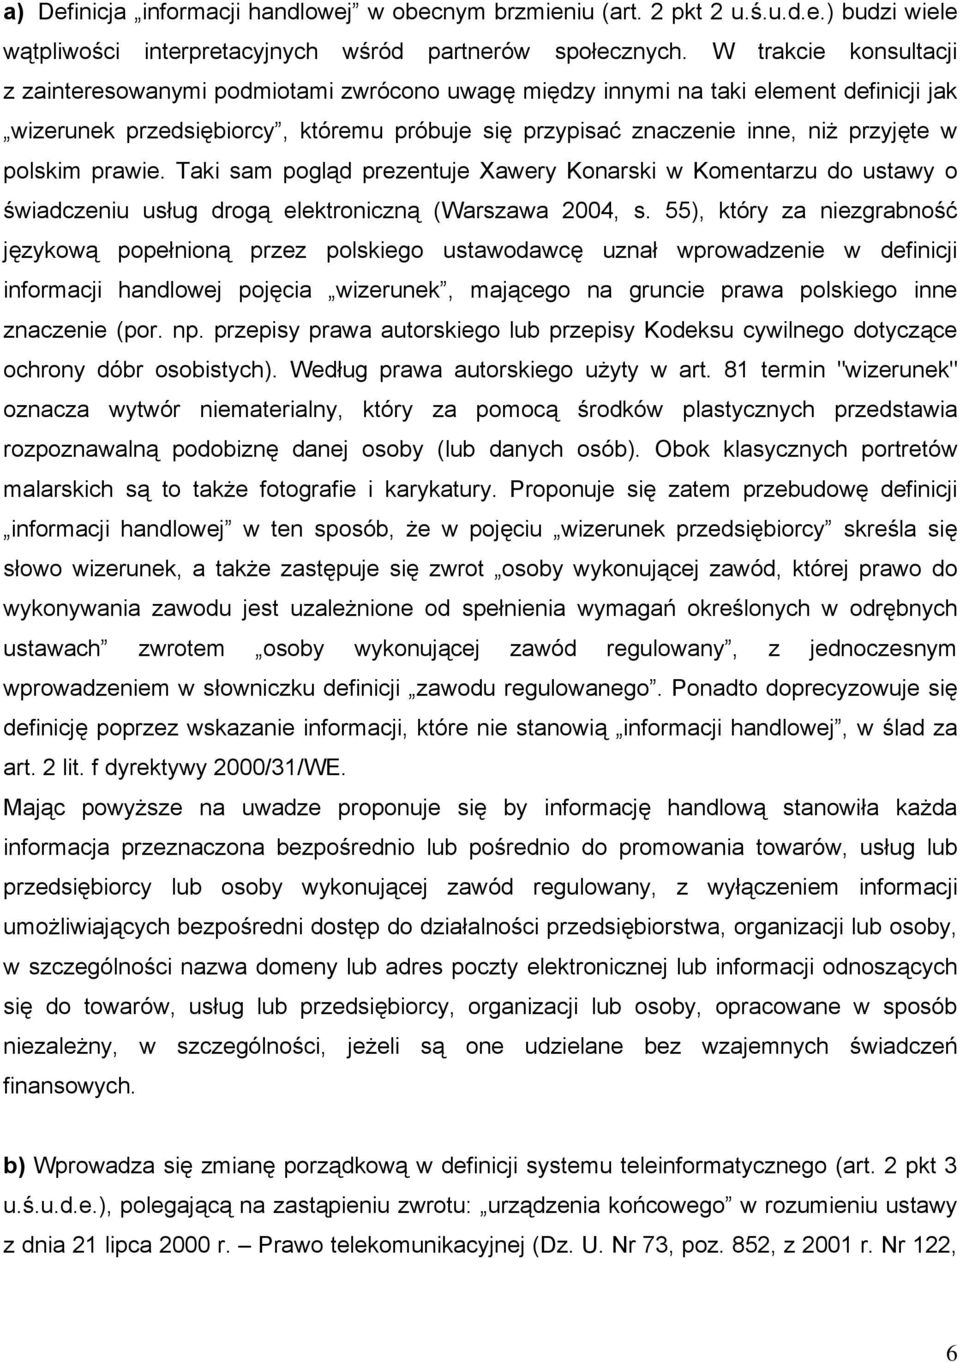 polskim prawie. Taki sam pogląd prezentuje Xawery Konarski w Komentarzu do ustawy o świadczeniu usług drogą elektroniczną (Warszawa 2004, s.